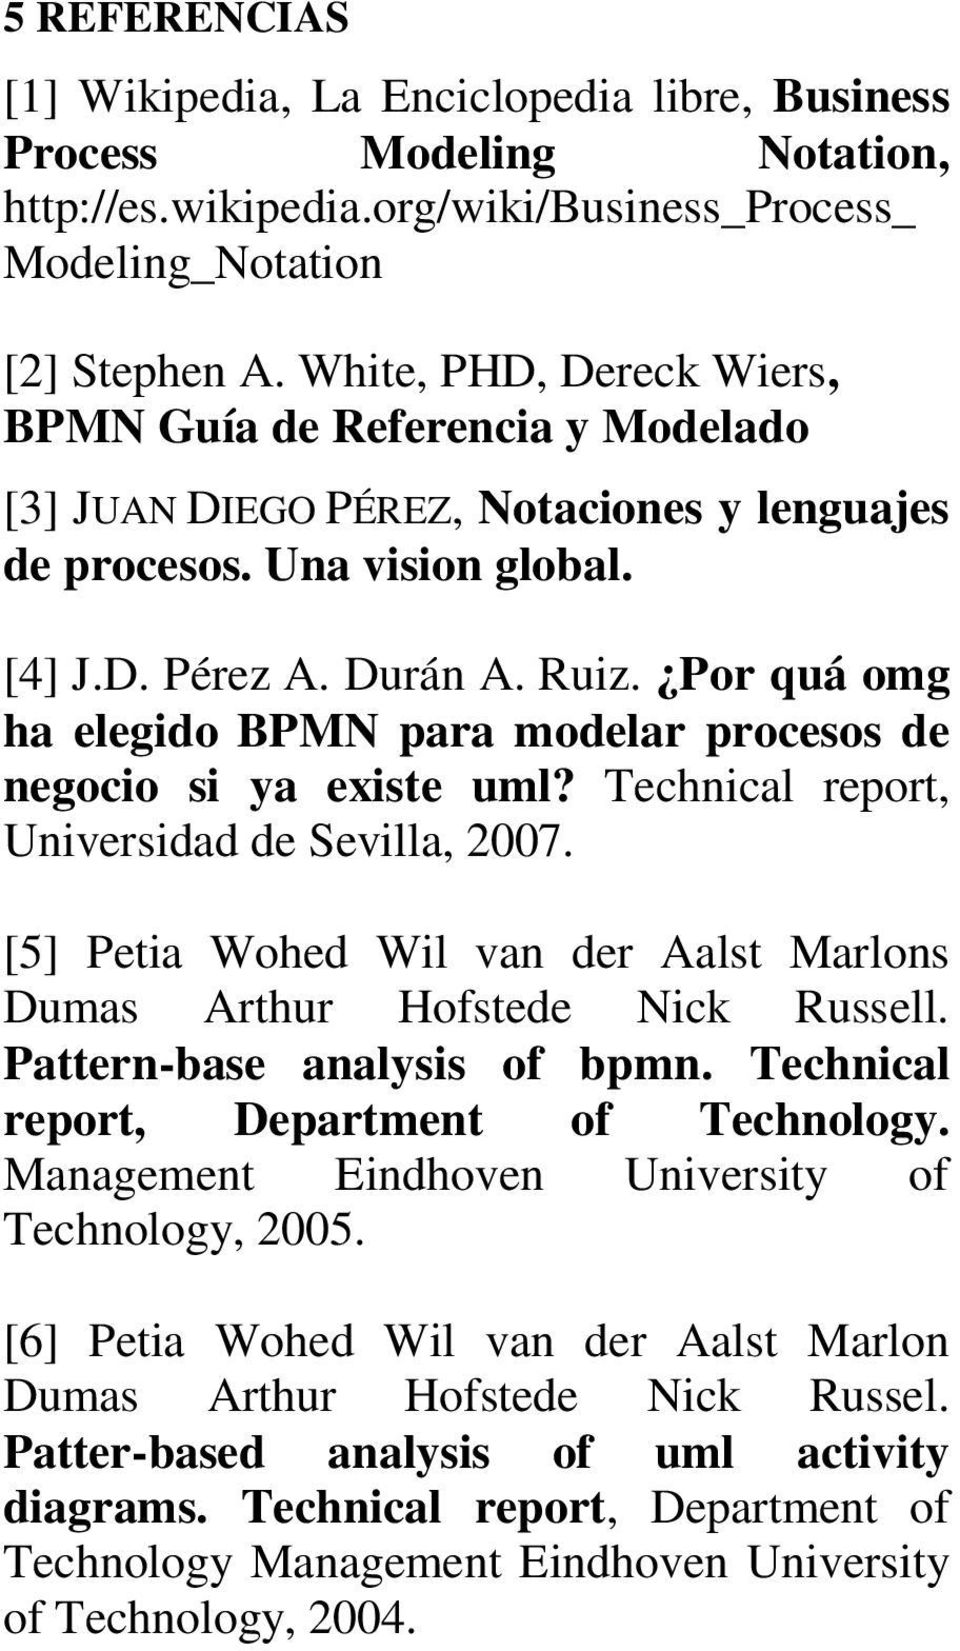 Por quá omg ha elegido BPMN para modelar procesos de negocio si ya existe uml? Technical report, Universidad de Sevilla, 2007.